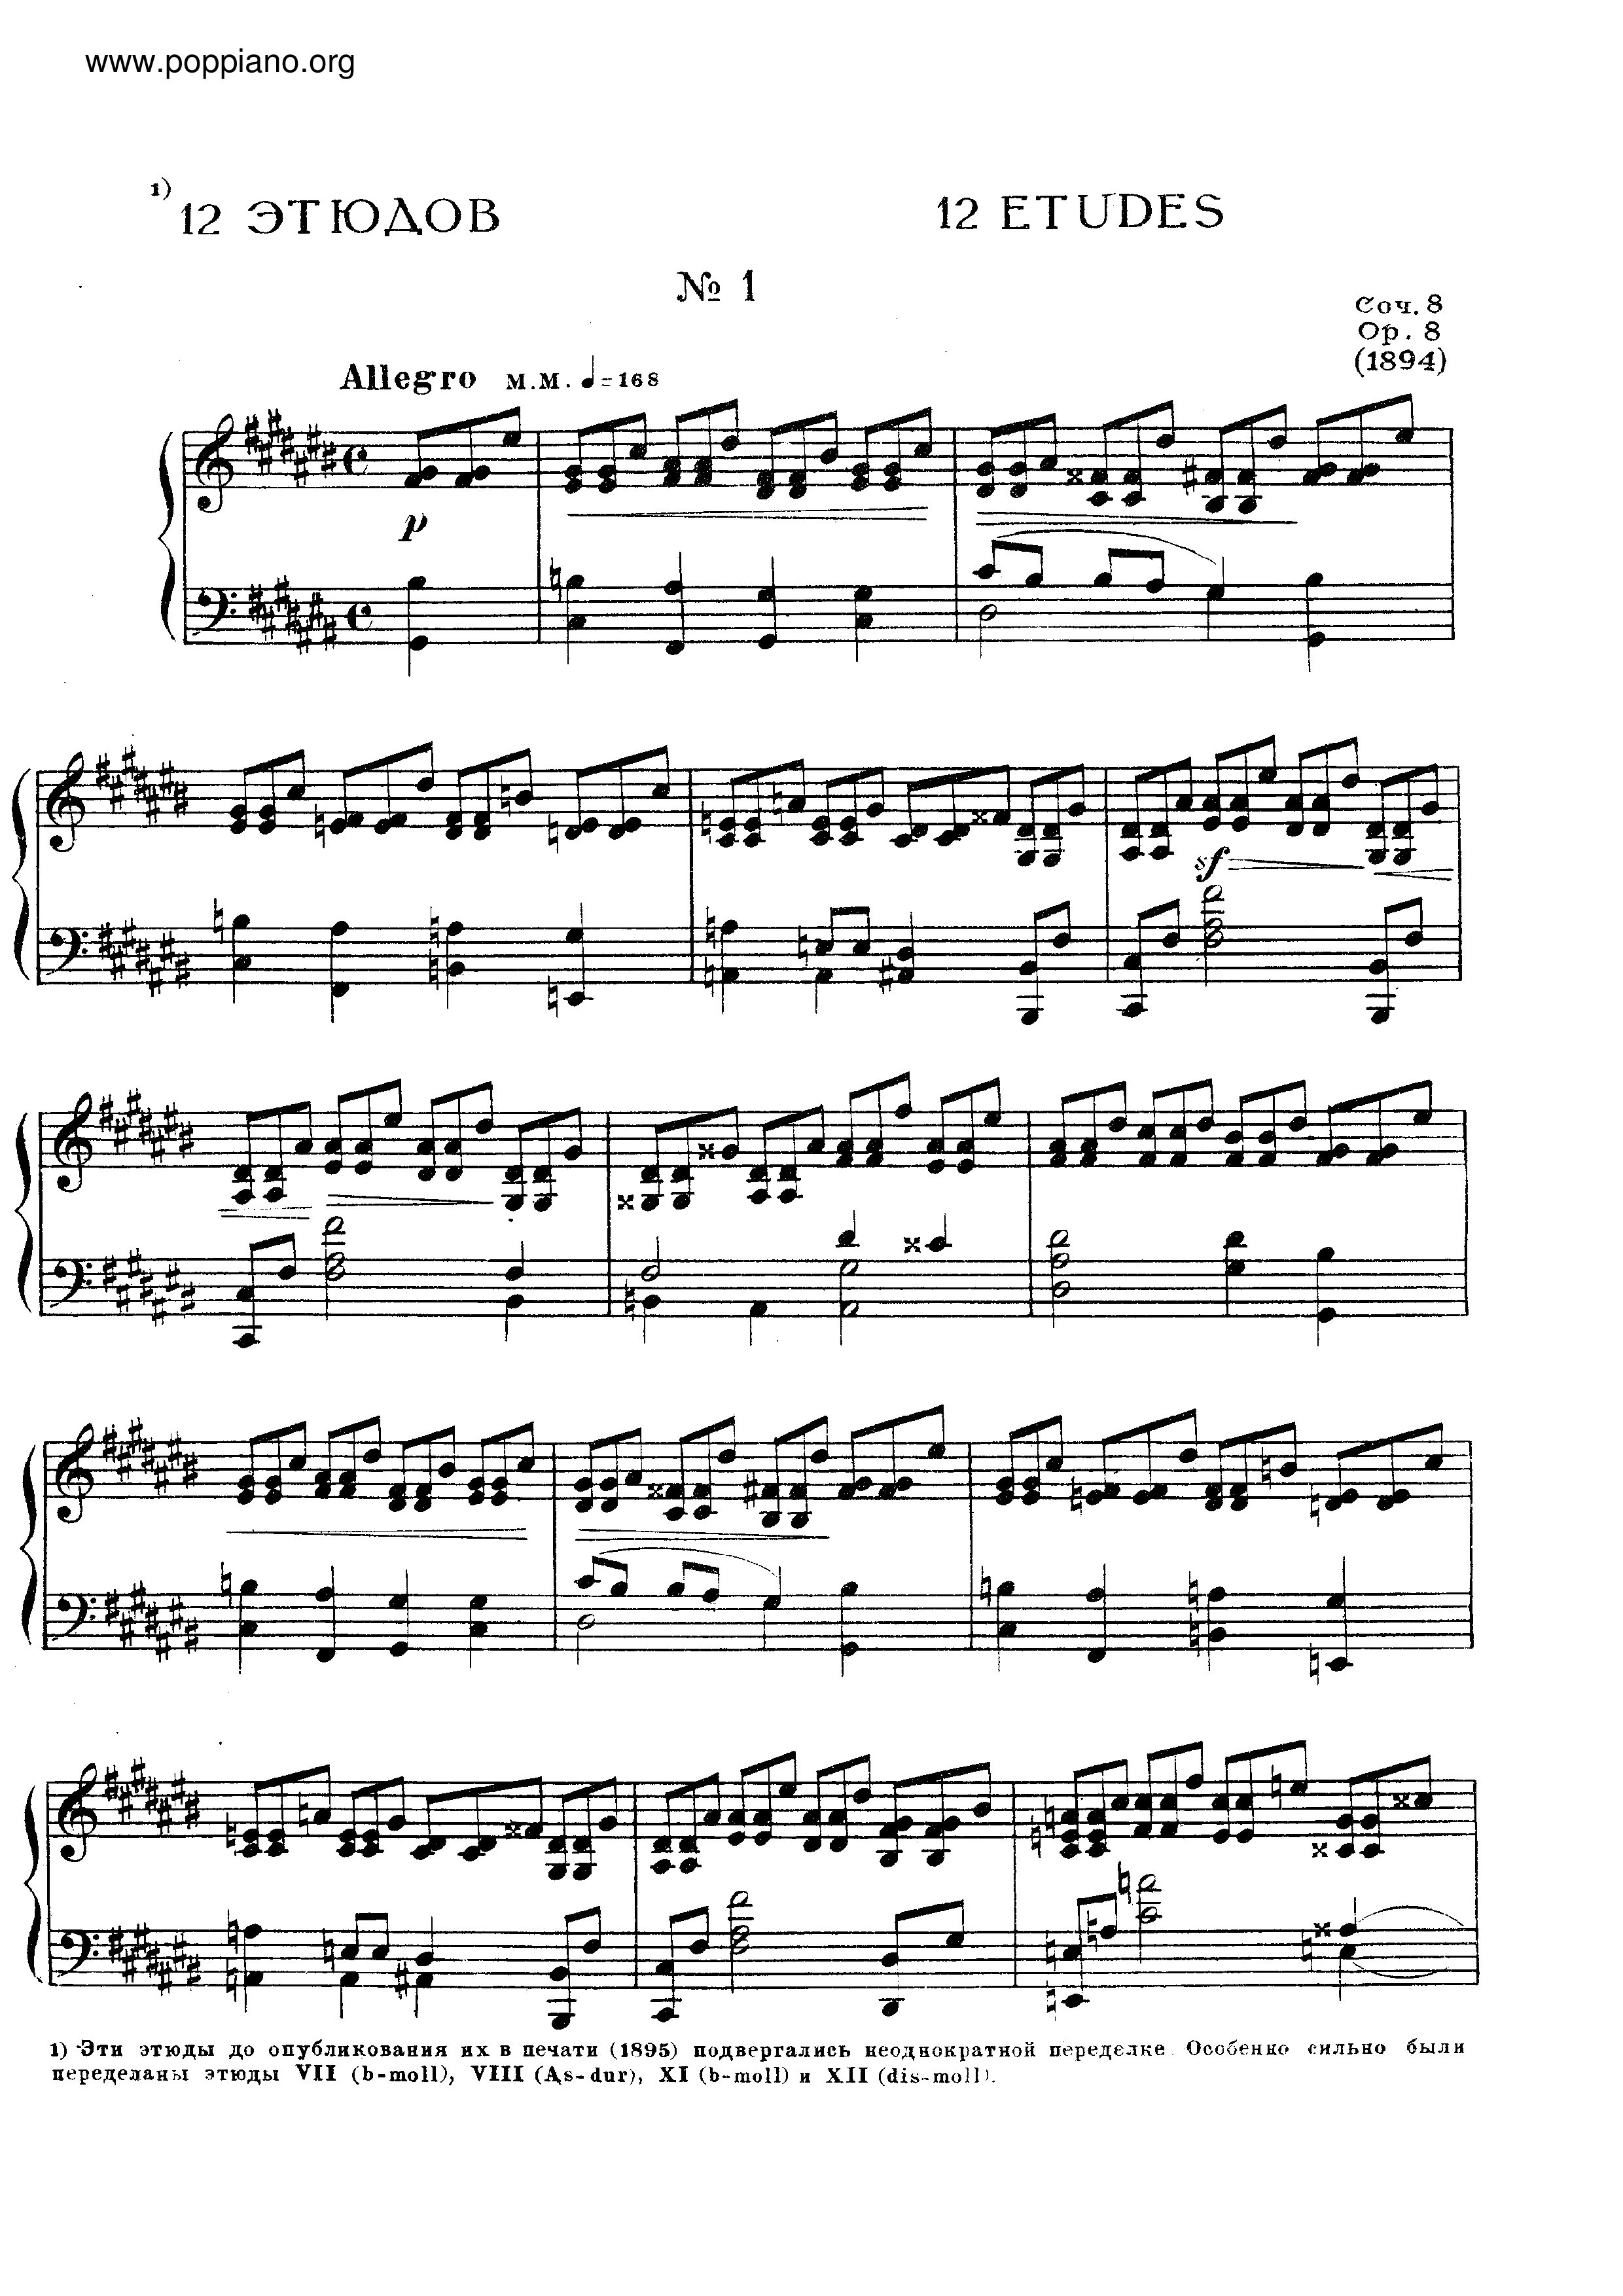 No.1 Etude in C sharp minor, Op.8琴譜